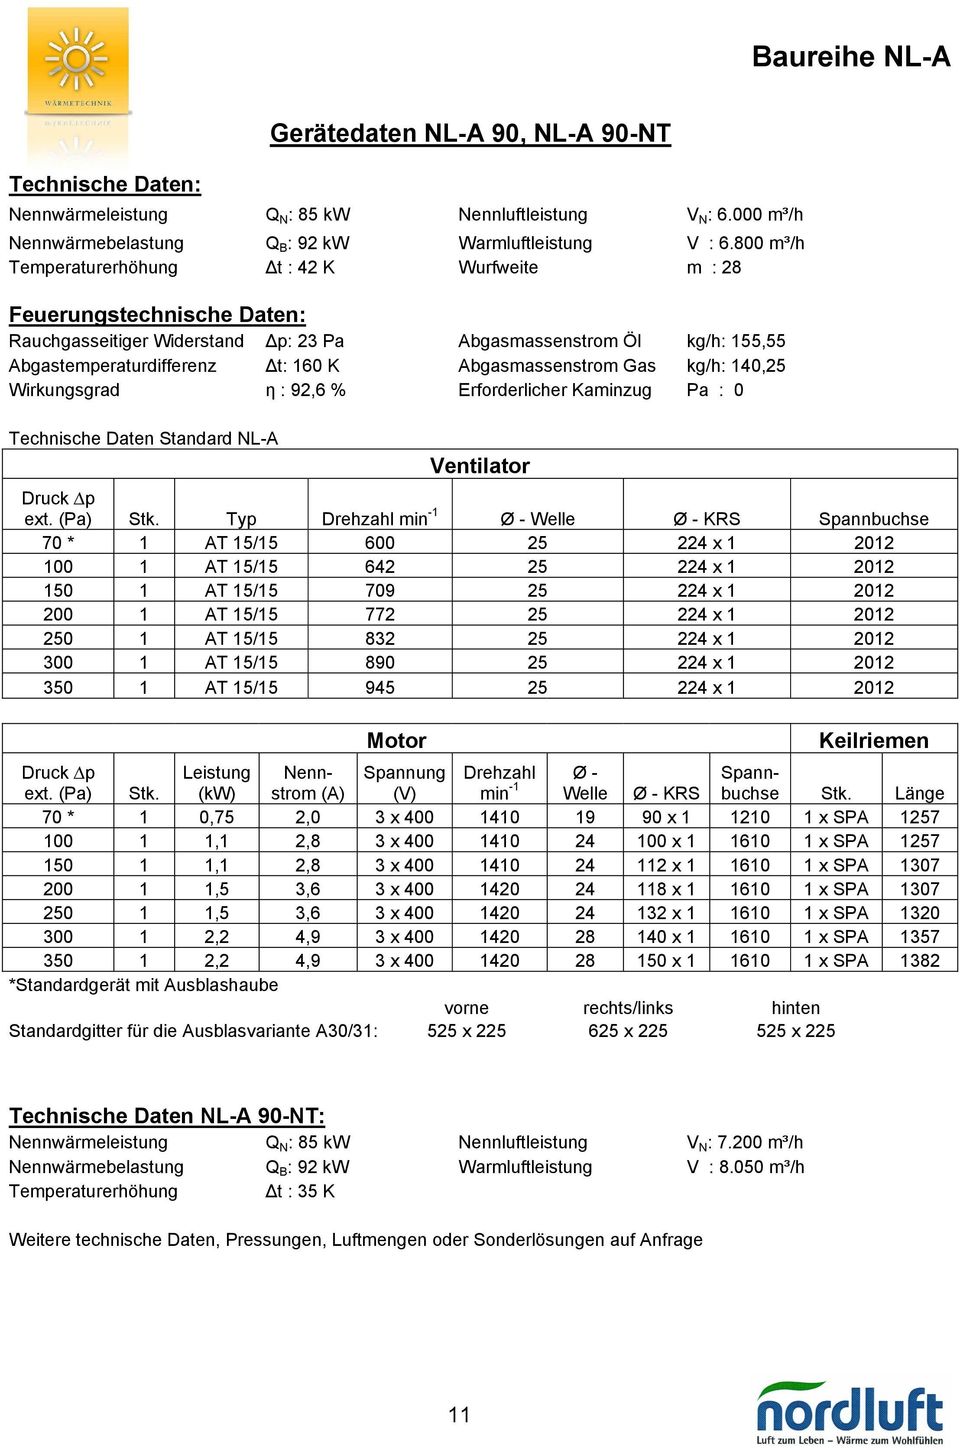 Abgasmassenstrom Gas kg/h: 140,25 Wirkungsgrad η : 92,6 % Erforderlicher Kaminzug Pa : 0 Technische Daten Standard NL-A Ventilator ext. (Pa) Stk.